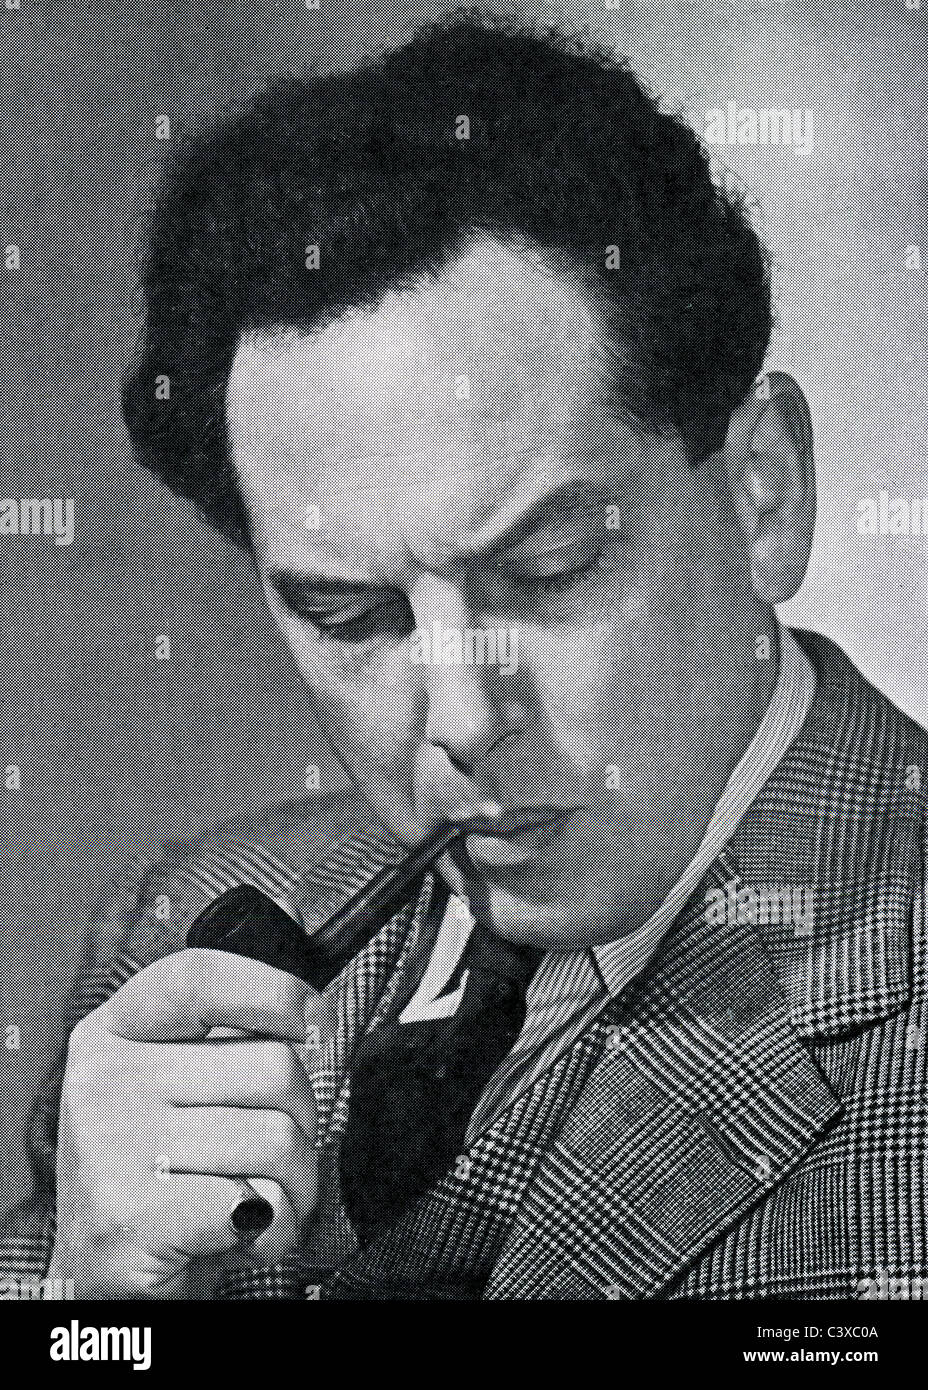 Harry Blech, violoniste et chef d'orchestre, photo Alfred Lammon, du programme souvenir du Royal Festival Hall, 1951 Banque D'Images